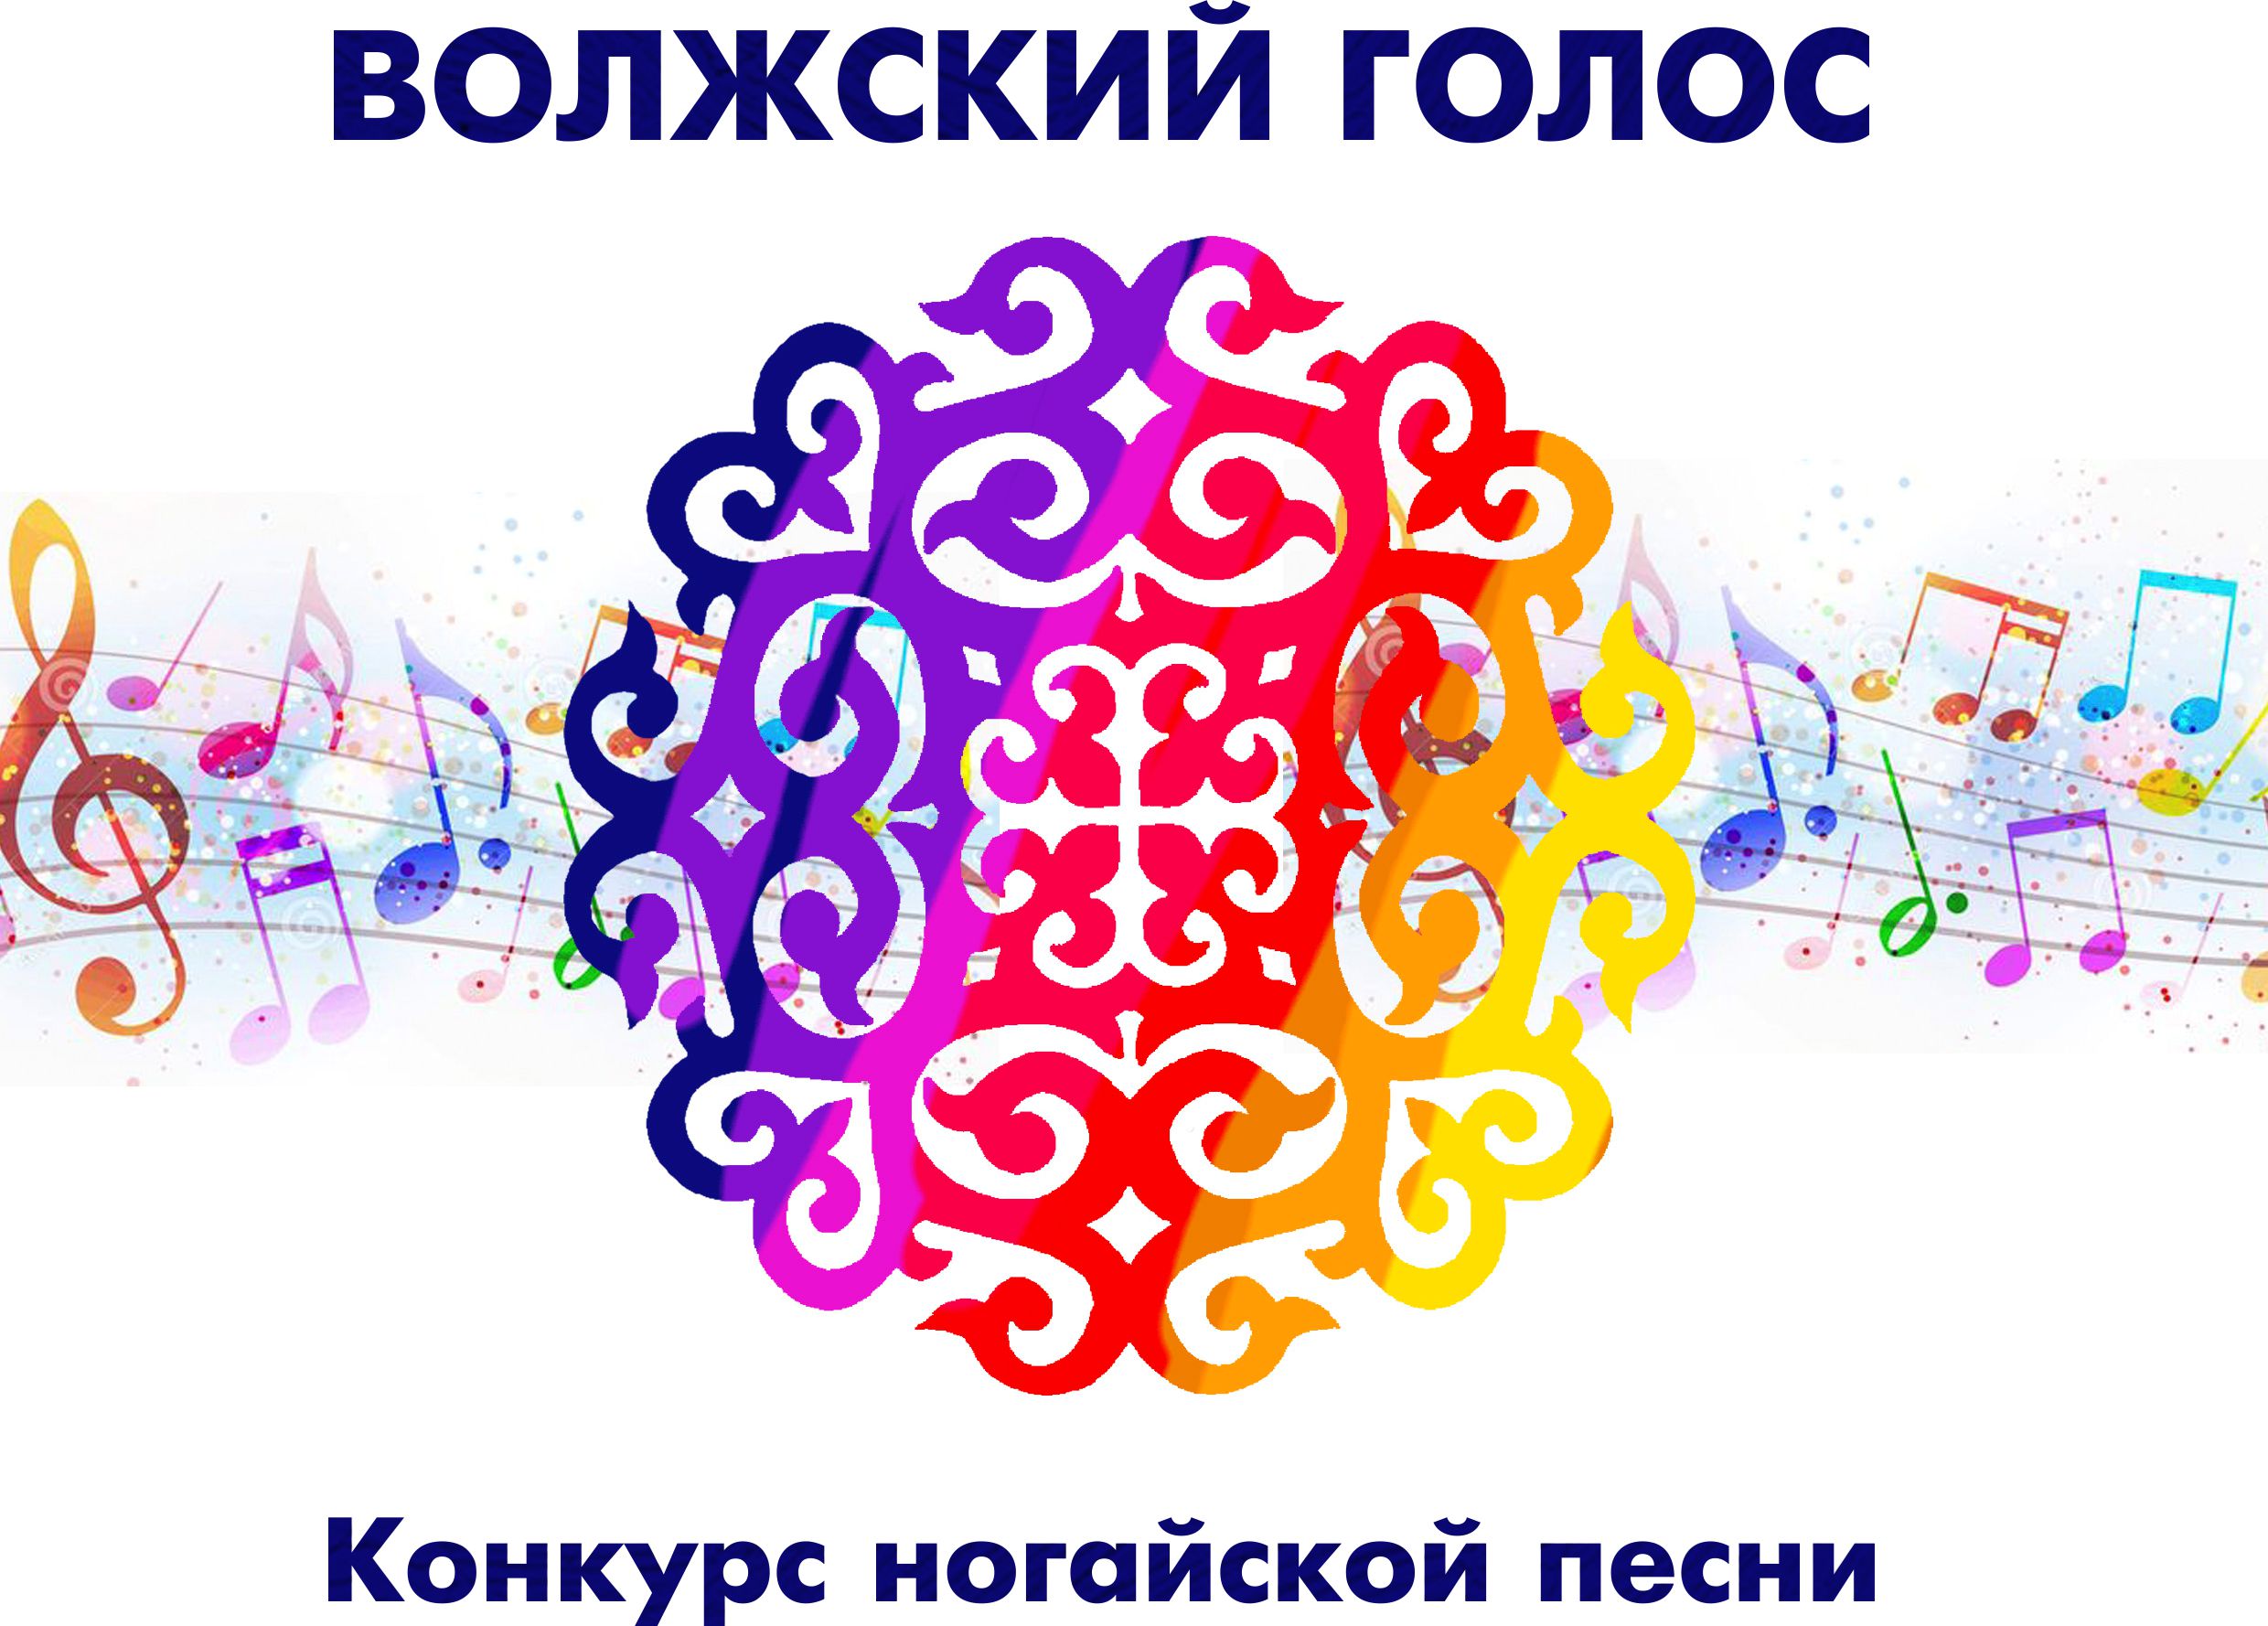 В Астрахани пройдет конкурс ногайской песни «Волжский голос»